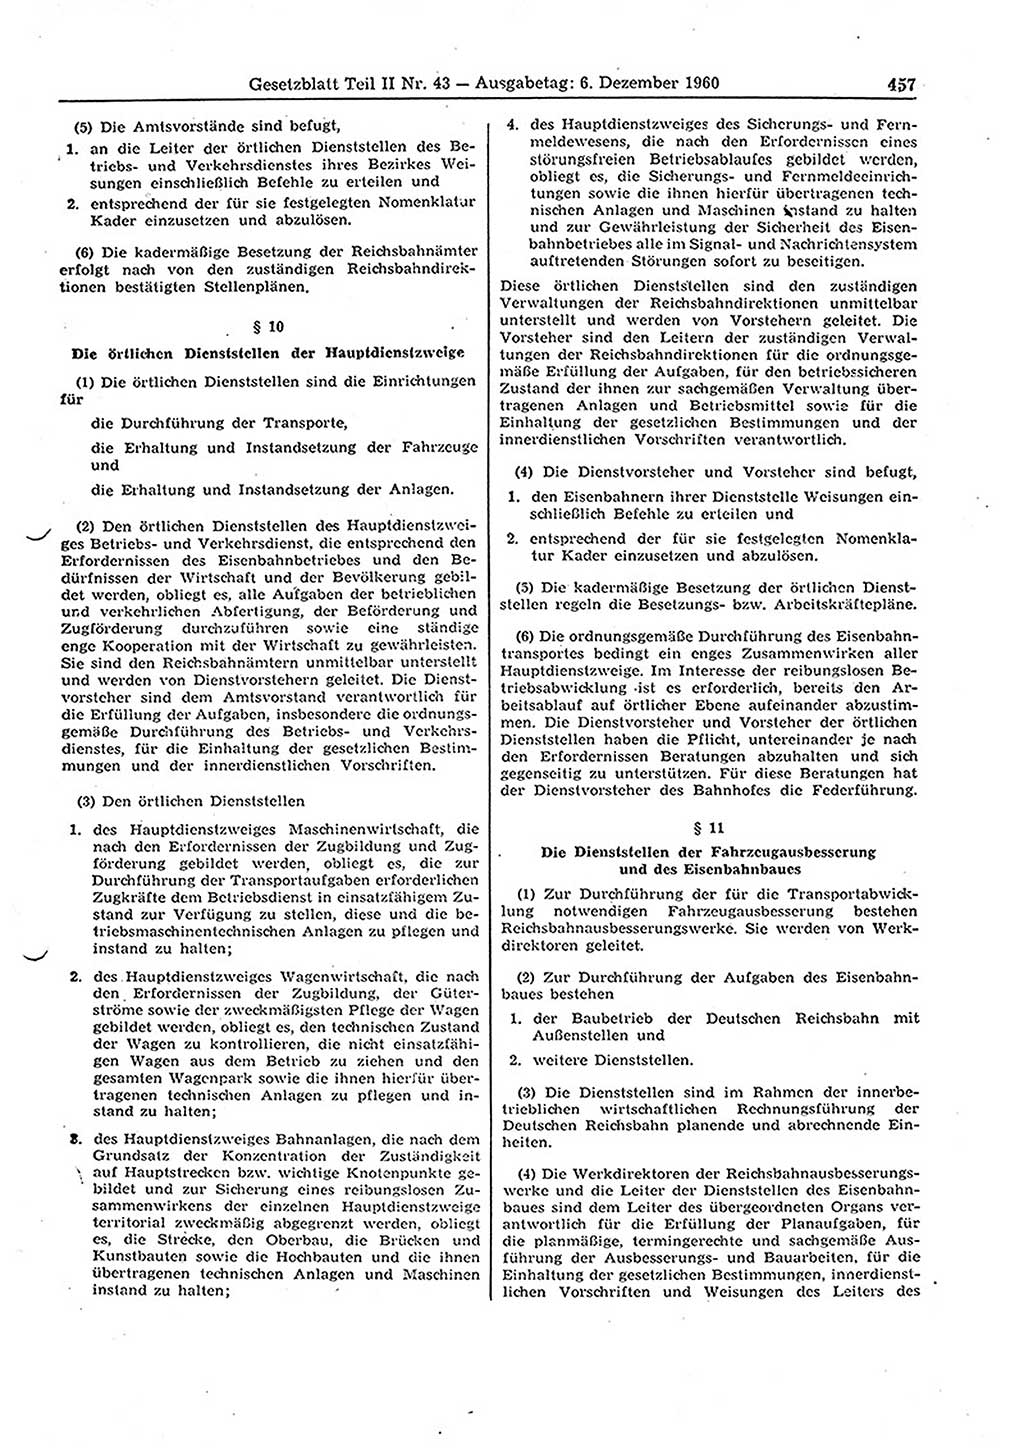 Gesetzblatt (GBl.) der Deutschen Demokratischen Republik (DDR) Teil ⅠⅠ 1960, Seite 457 (GBl. DDR ⅠⅠ 1960, S. 457)